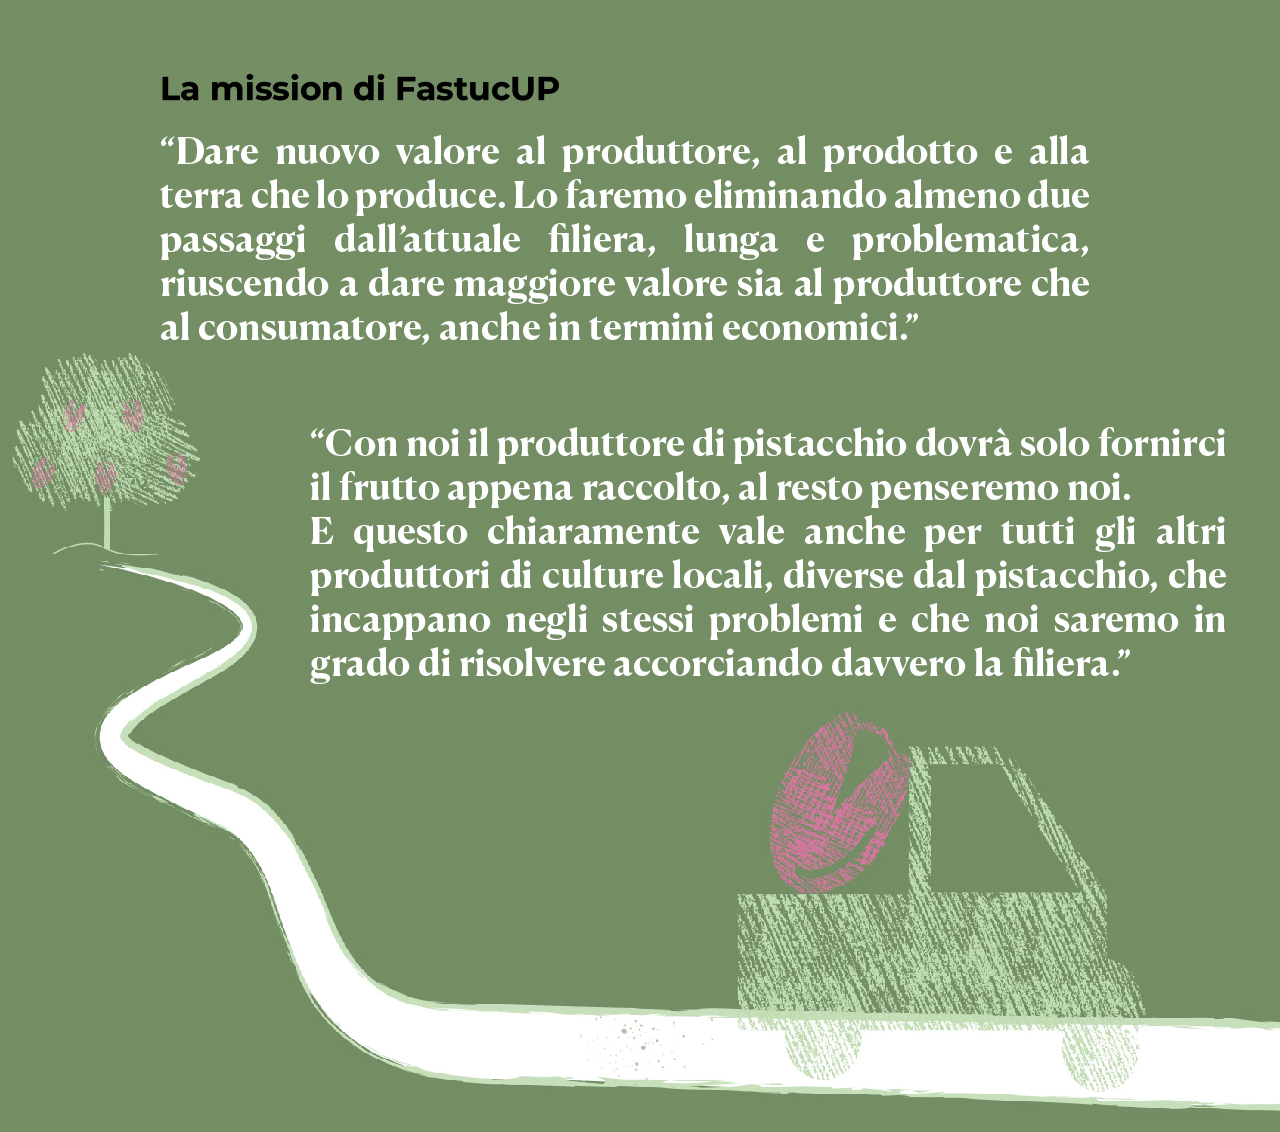 fastucup-crowdfunding-pistacchio-piattaforma-prodotti-siciliani-misssion